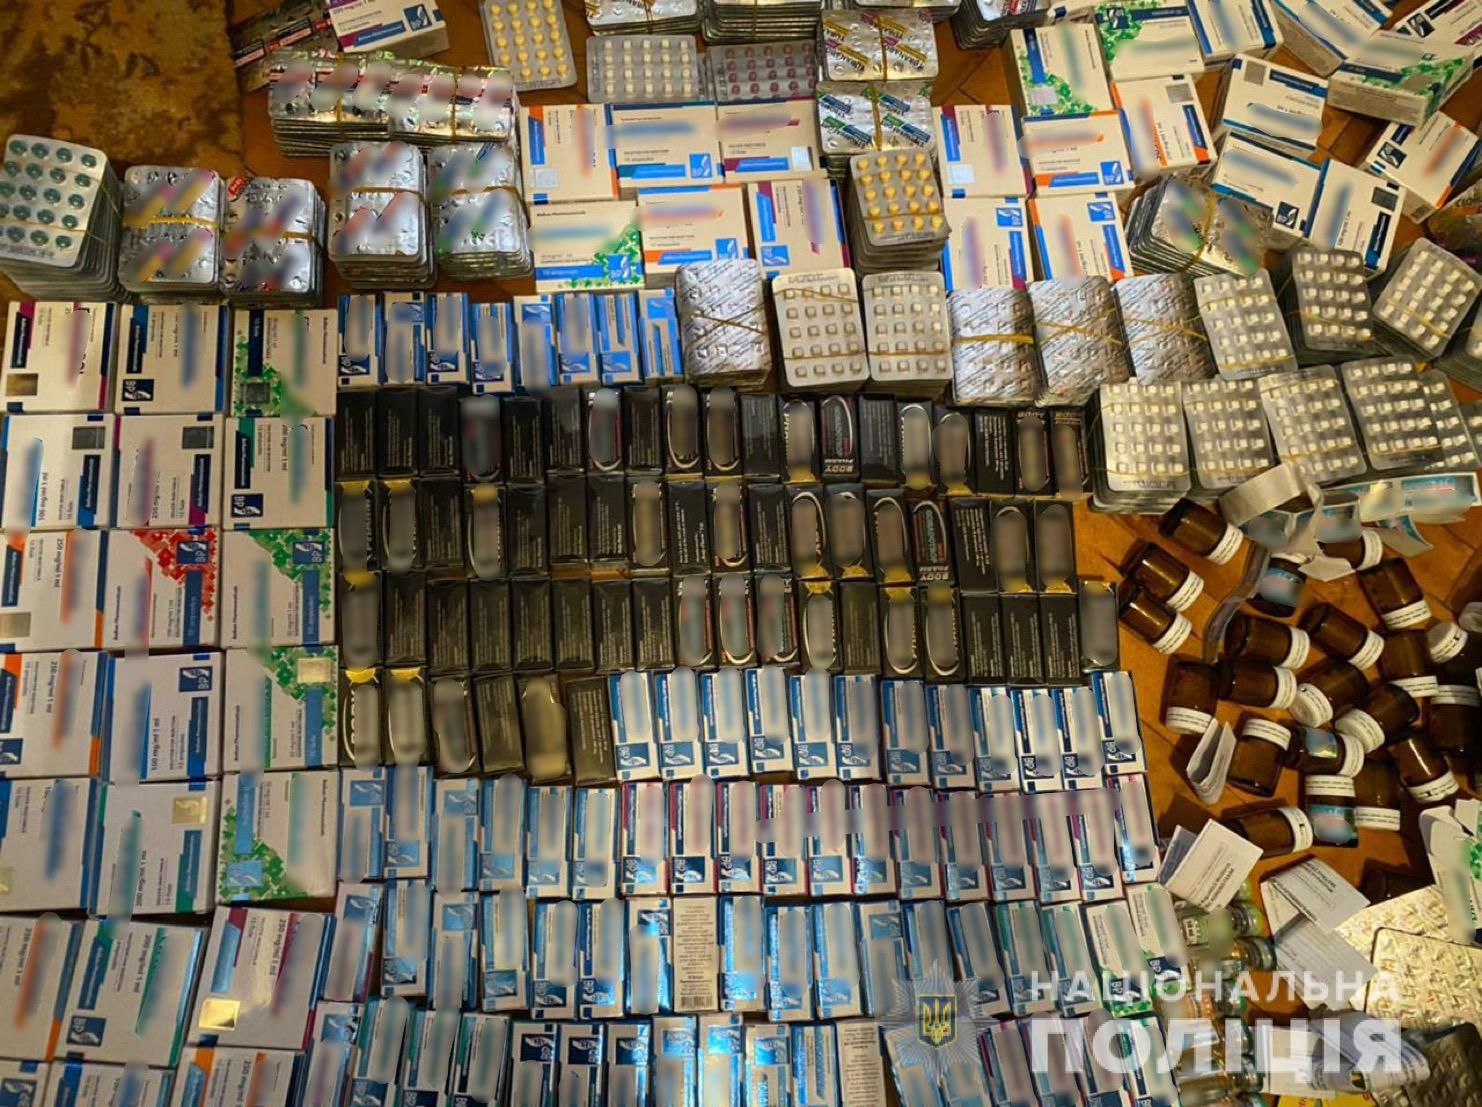 Стероиды на 1,5 миллиона гривен: львовян, которые продавали запрещенные препараты, задержали - фото 